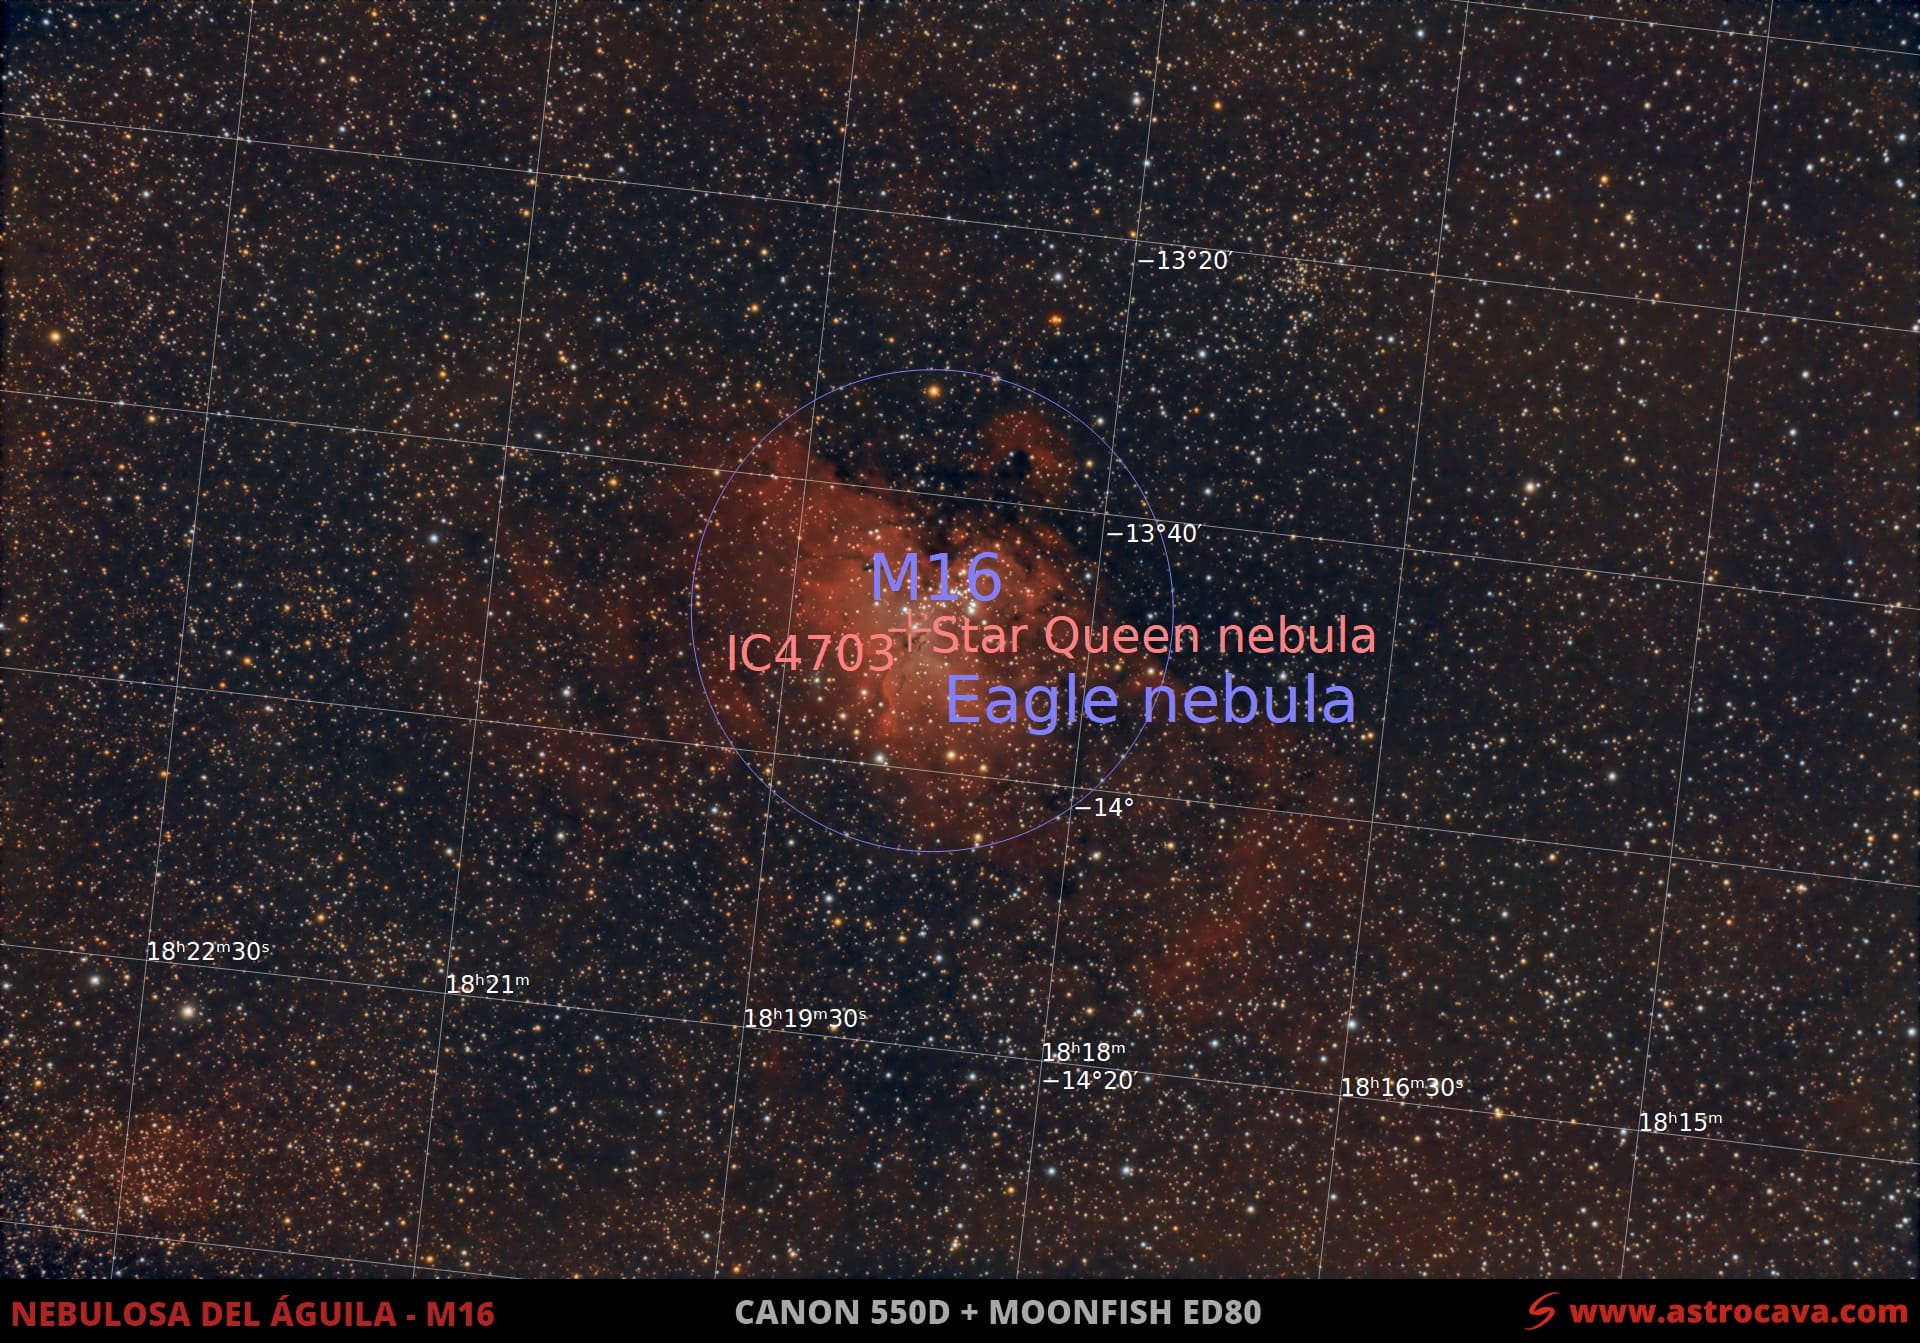 Nebulosa del Águila (M16) en la Serpiente. Versión anotada.